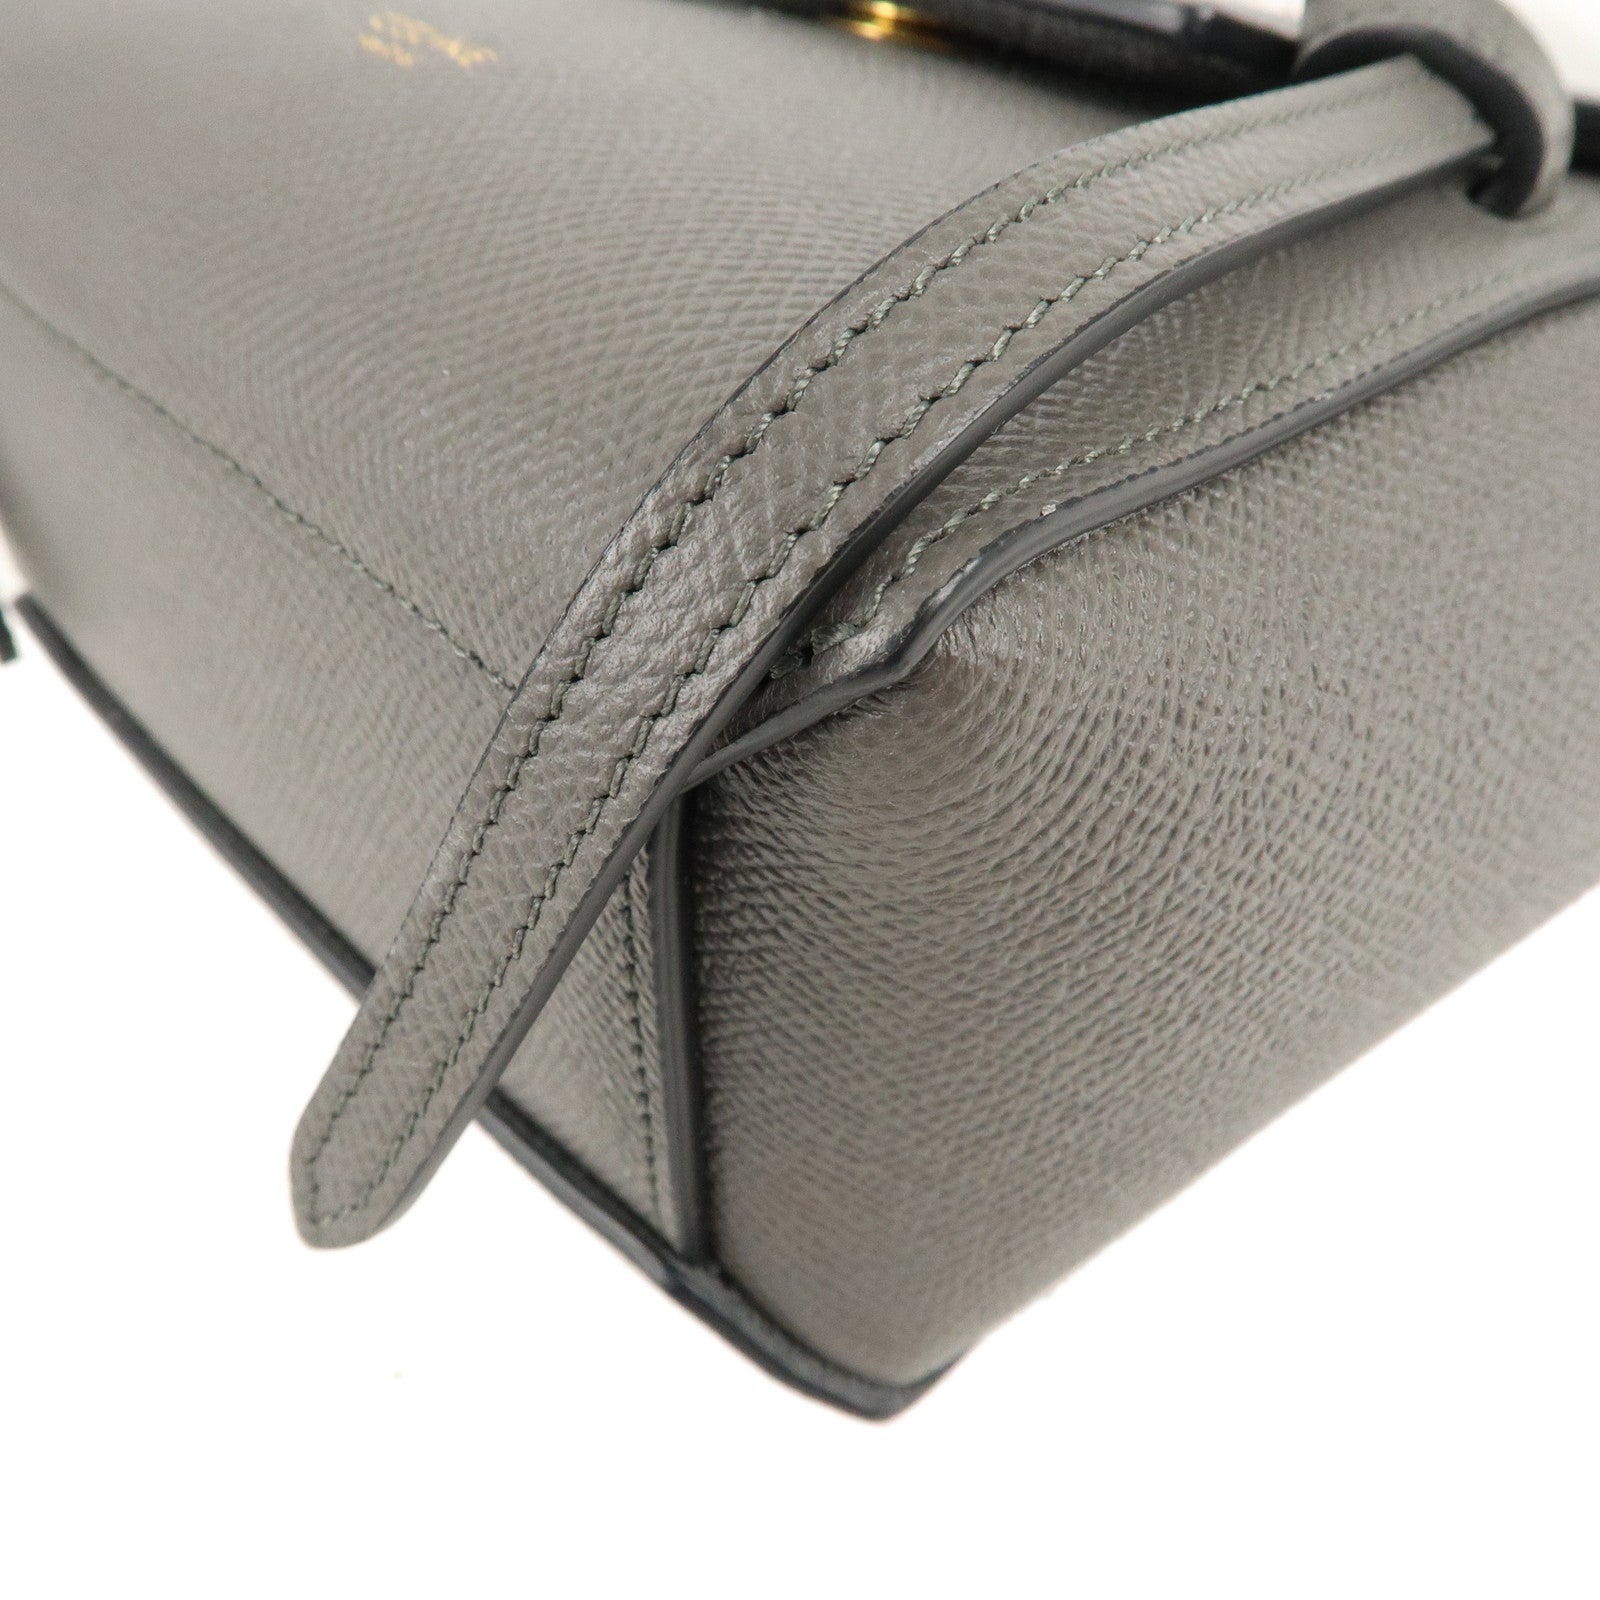 Should You Buy? Celine Calfskin Leather Pico Belt Bag 